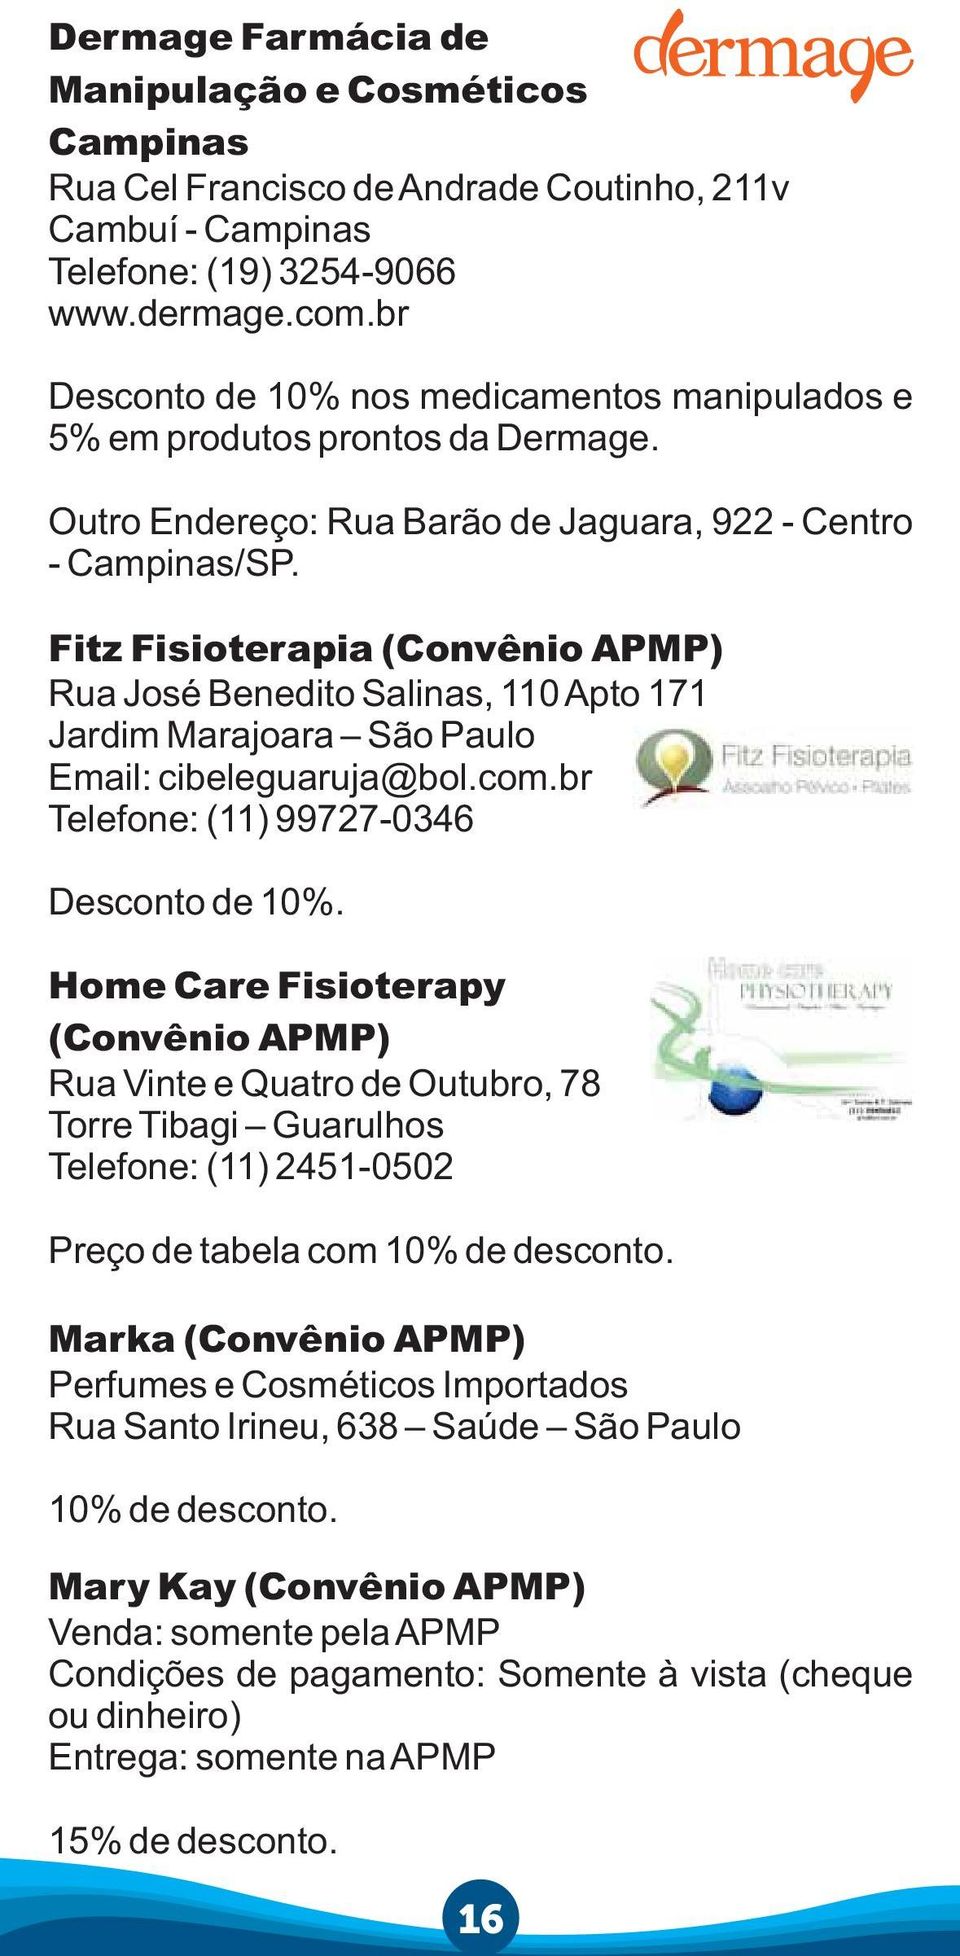 Fitz Fisioterapia Rua José Benedito Salinas, 110 Apto 171 Jardim Marajoara São Paulo Email: cibeleguaruja@bol.com.br Telefone: (11) 99727-0346 Desconto de 10%.